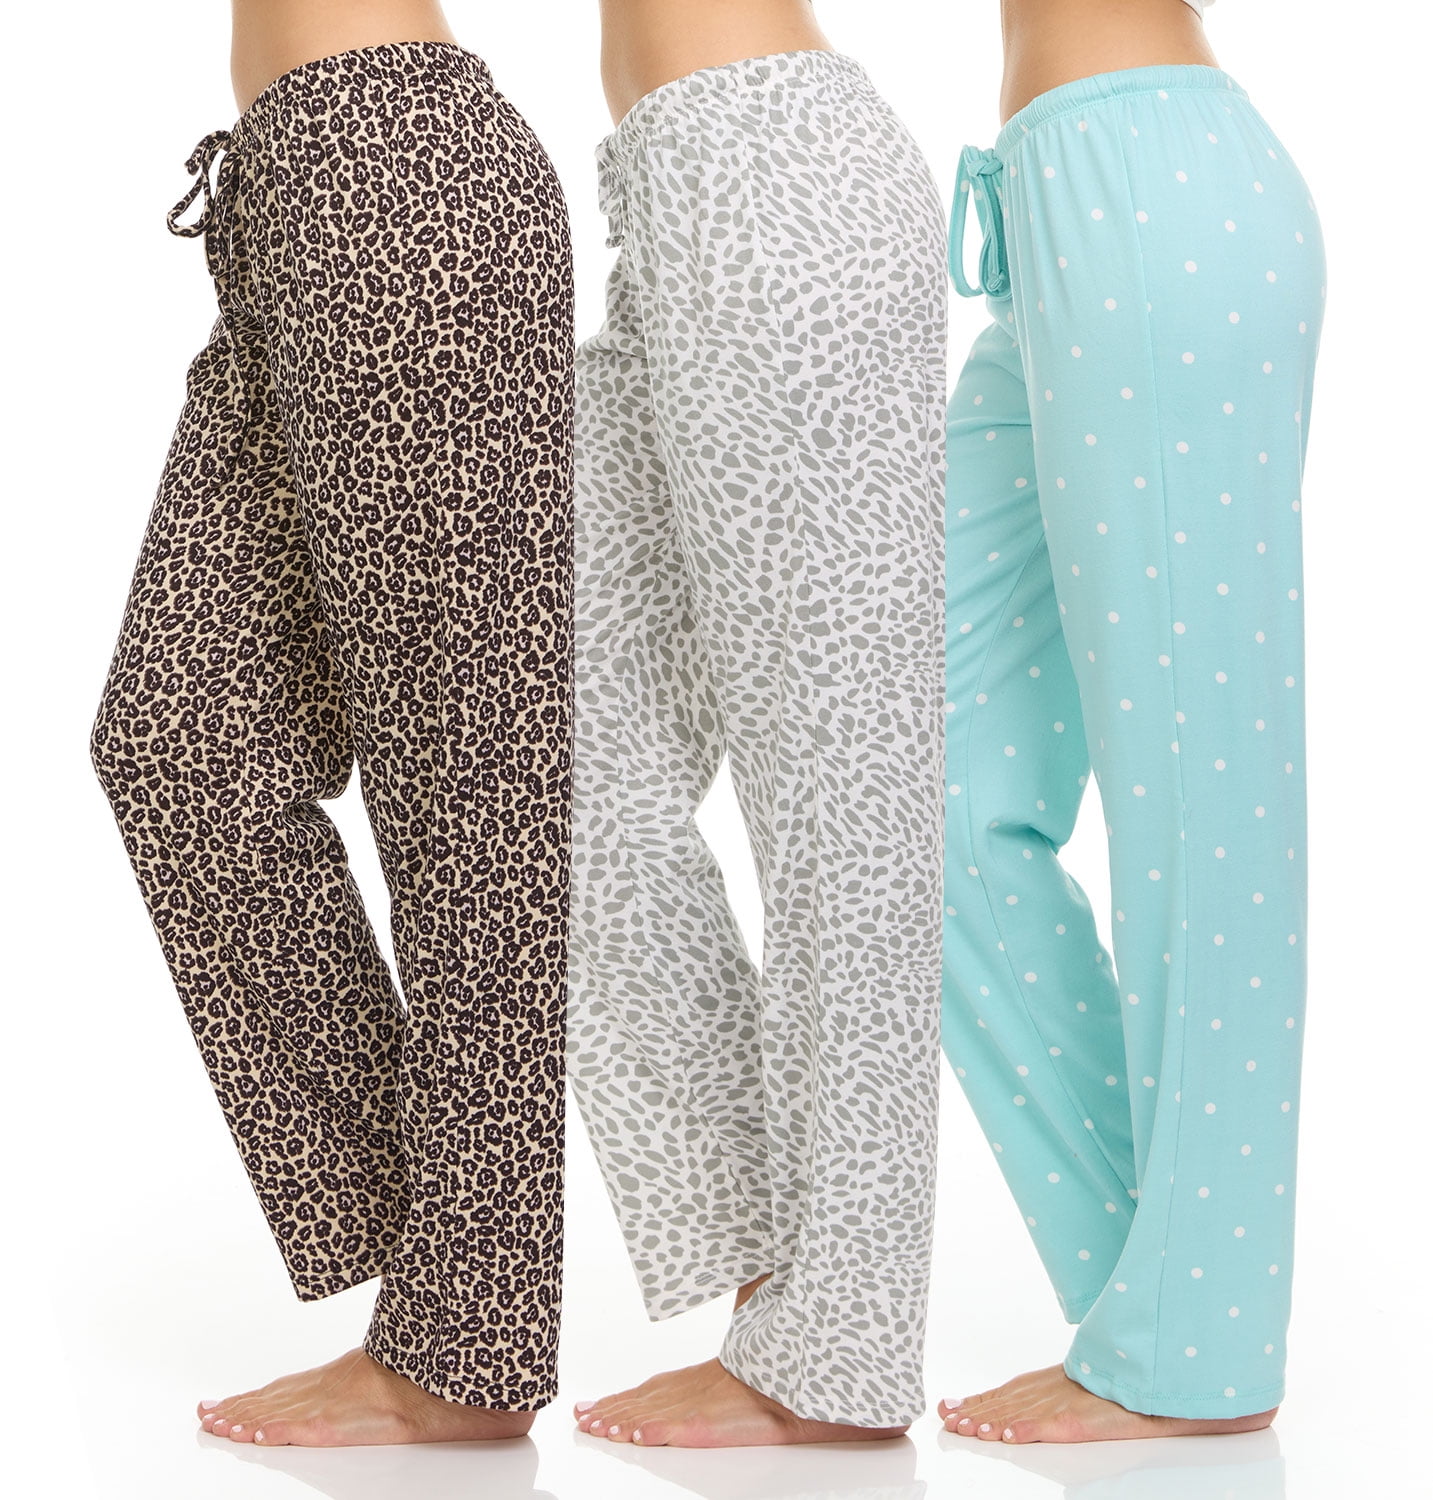 Joyspun Women's Hacci Knit Wide Leg Pajama Pants, Sizes S to 3X